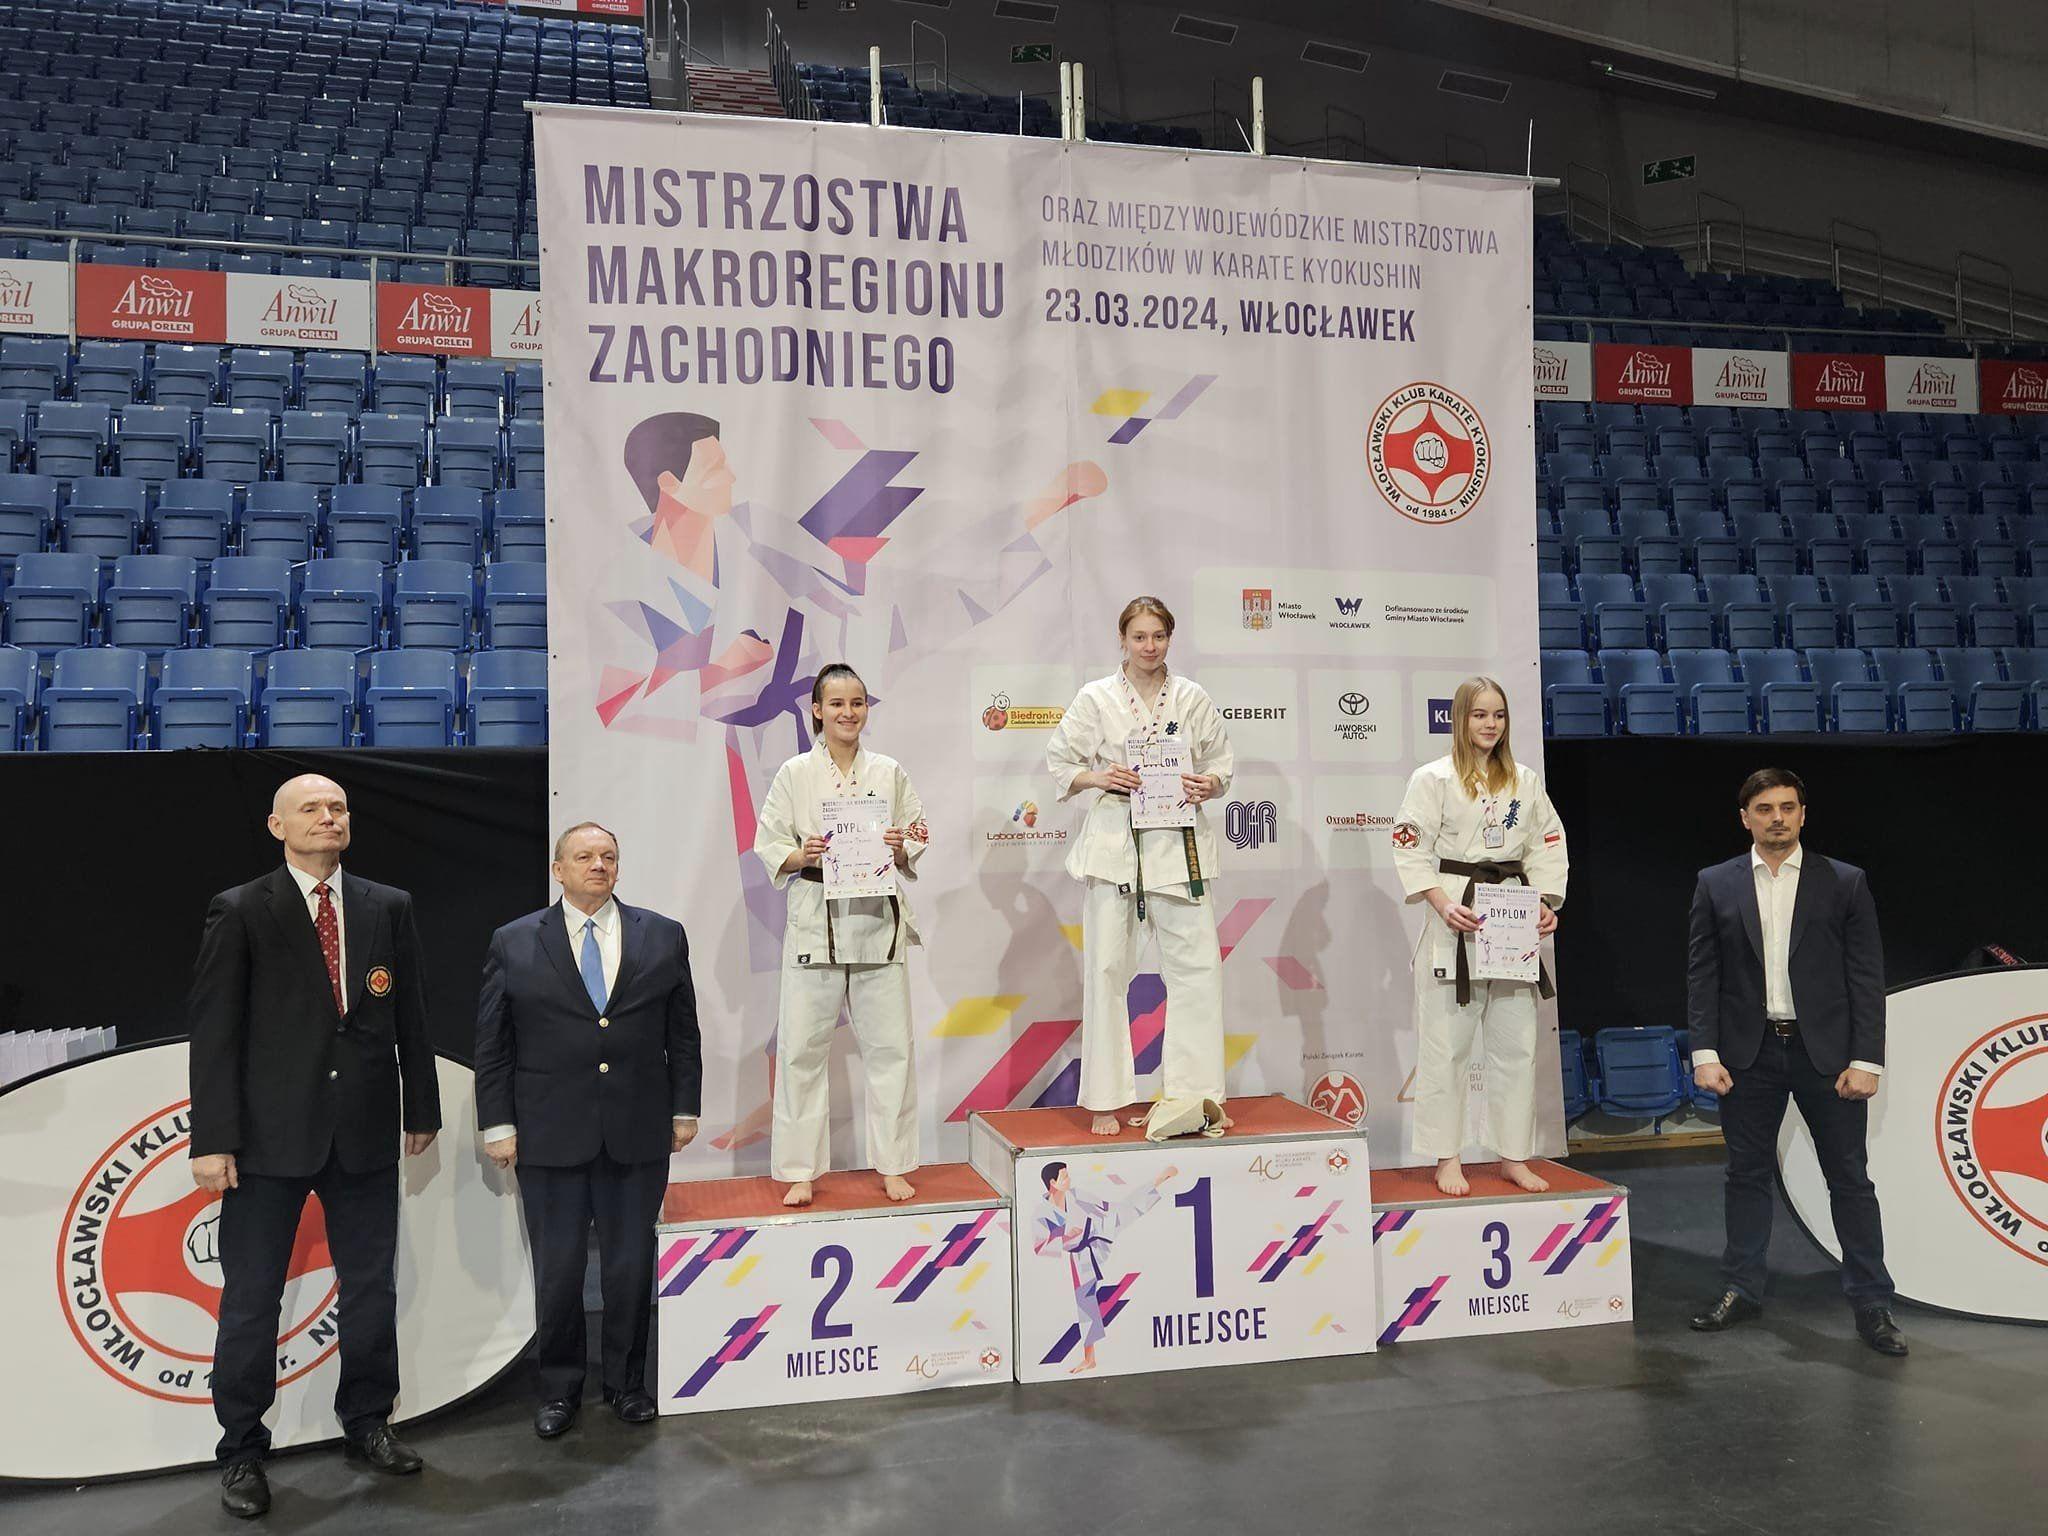 Zdj. nr. 9. Mistrzostwa Makroregionu Zachodniego Karate Kyokushin - 23 marca 2024 r., Włocławek